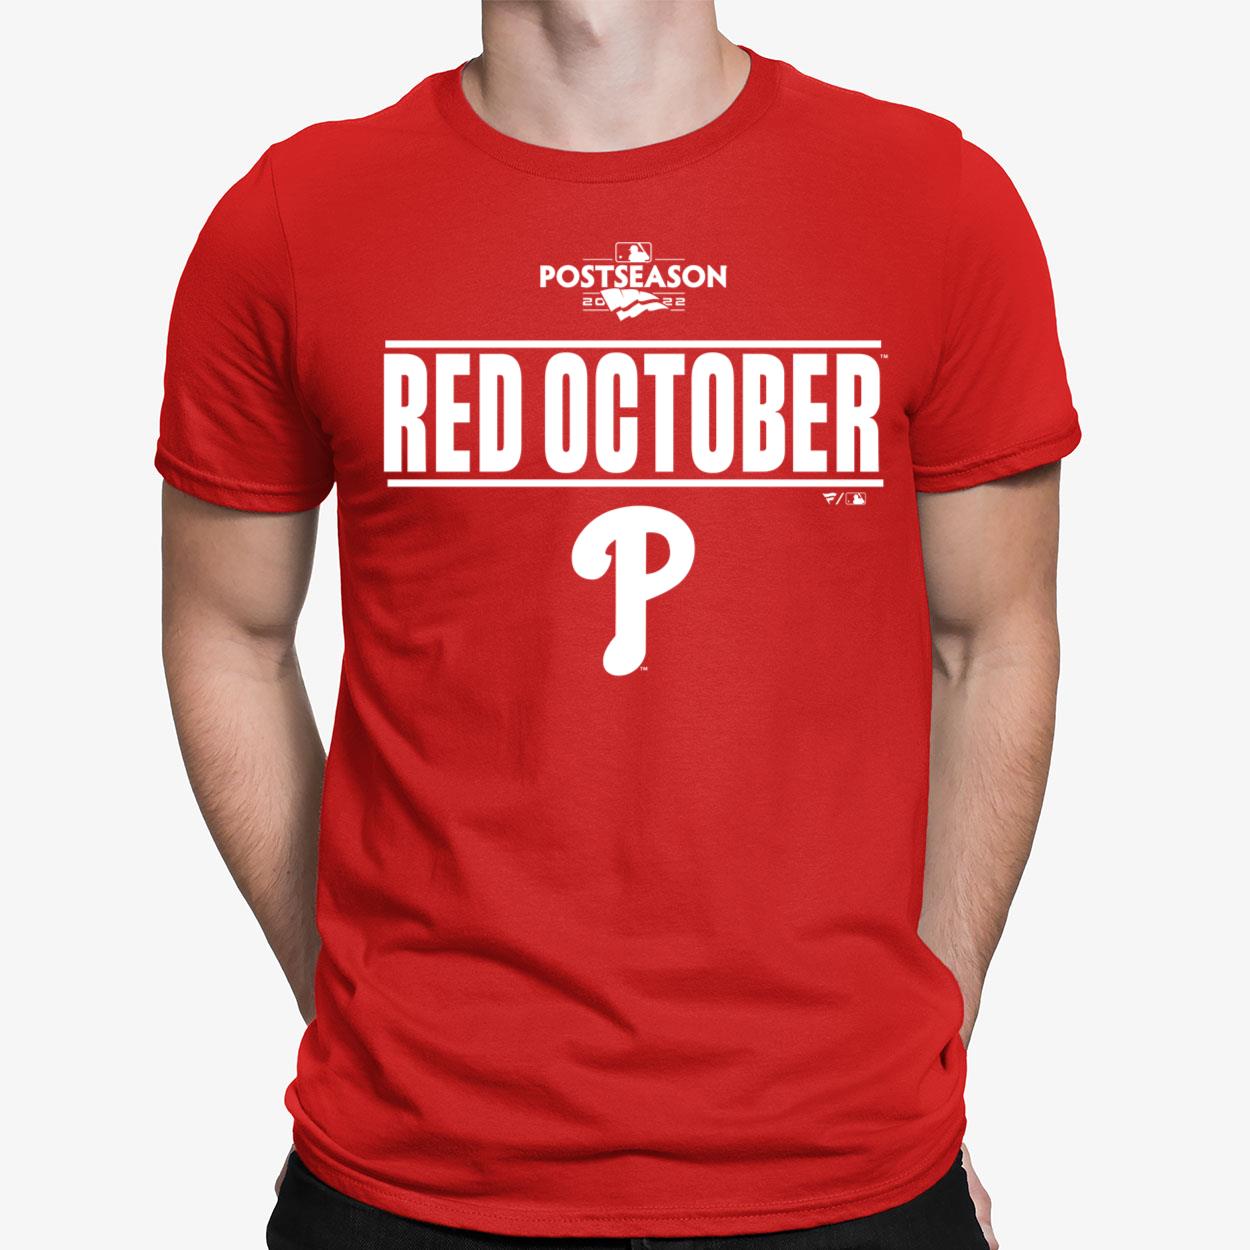 Red October Phillies Shirt, hoodie, longsleeve, sweatshirt, v-neck tee